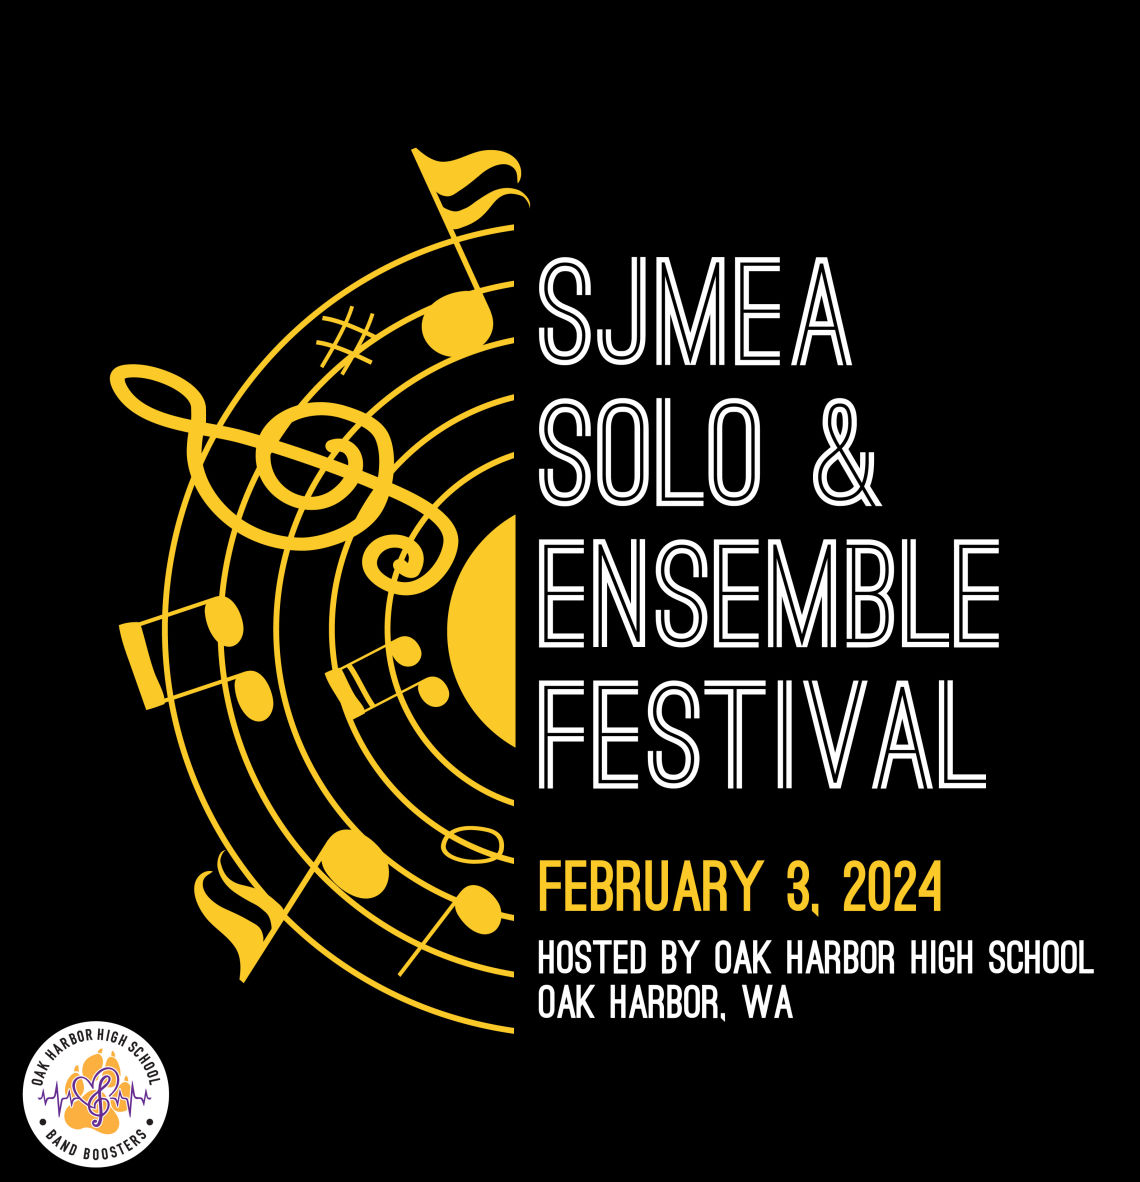 SJMEA Solo & Ensemble Festival